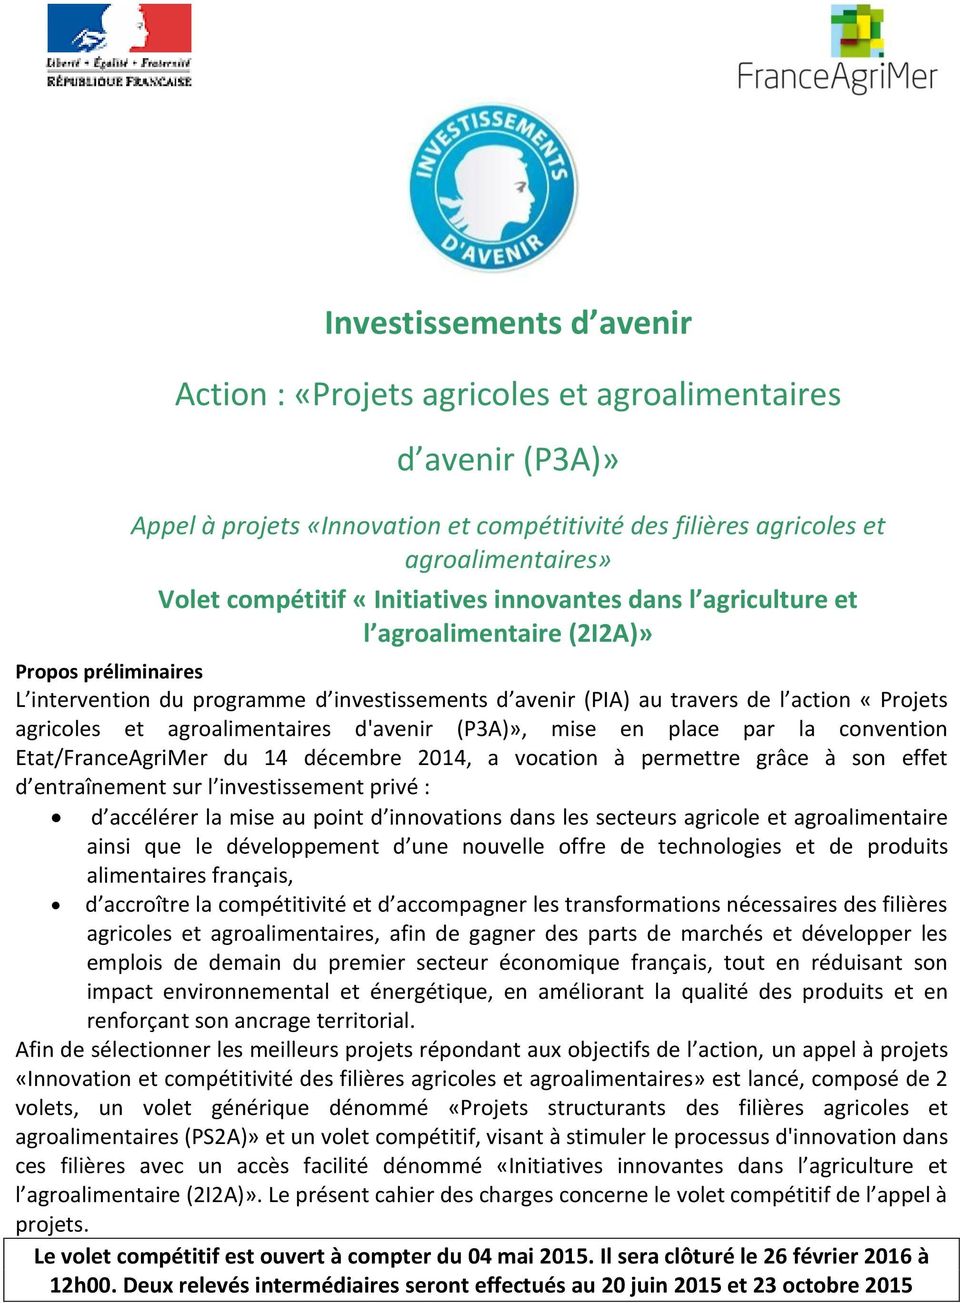 agroalimentaires d'avenir (P3A)», mise en place par la convention Etat/FranceAgriMer du 14 décembre 2014, a vocation à permettre grâce à son effet d entraînement sur l investissement privé : d